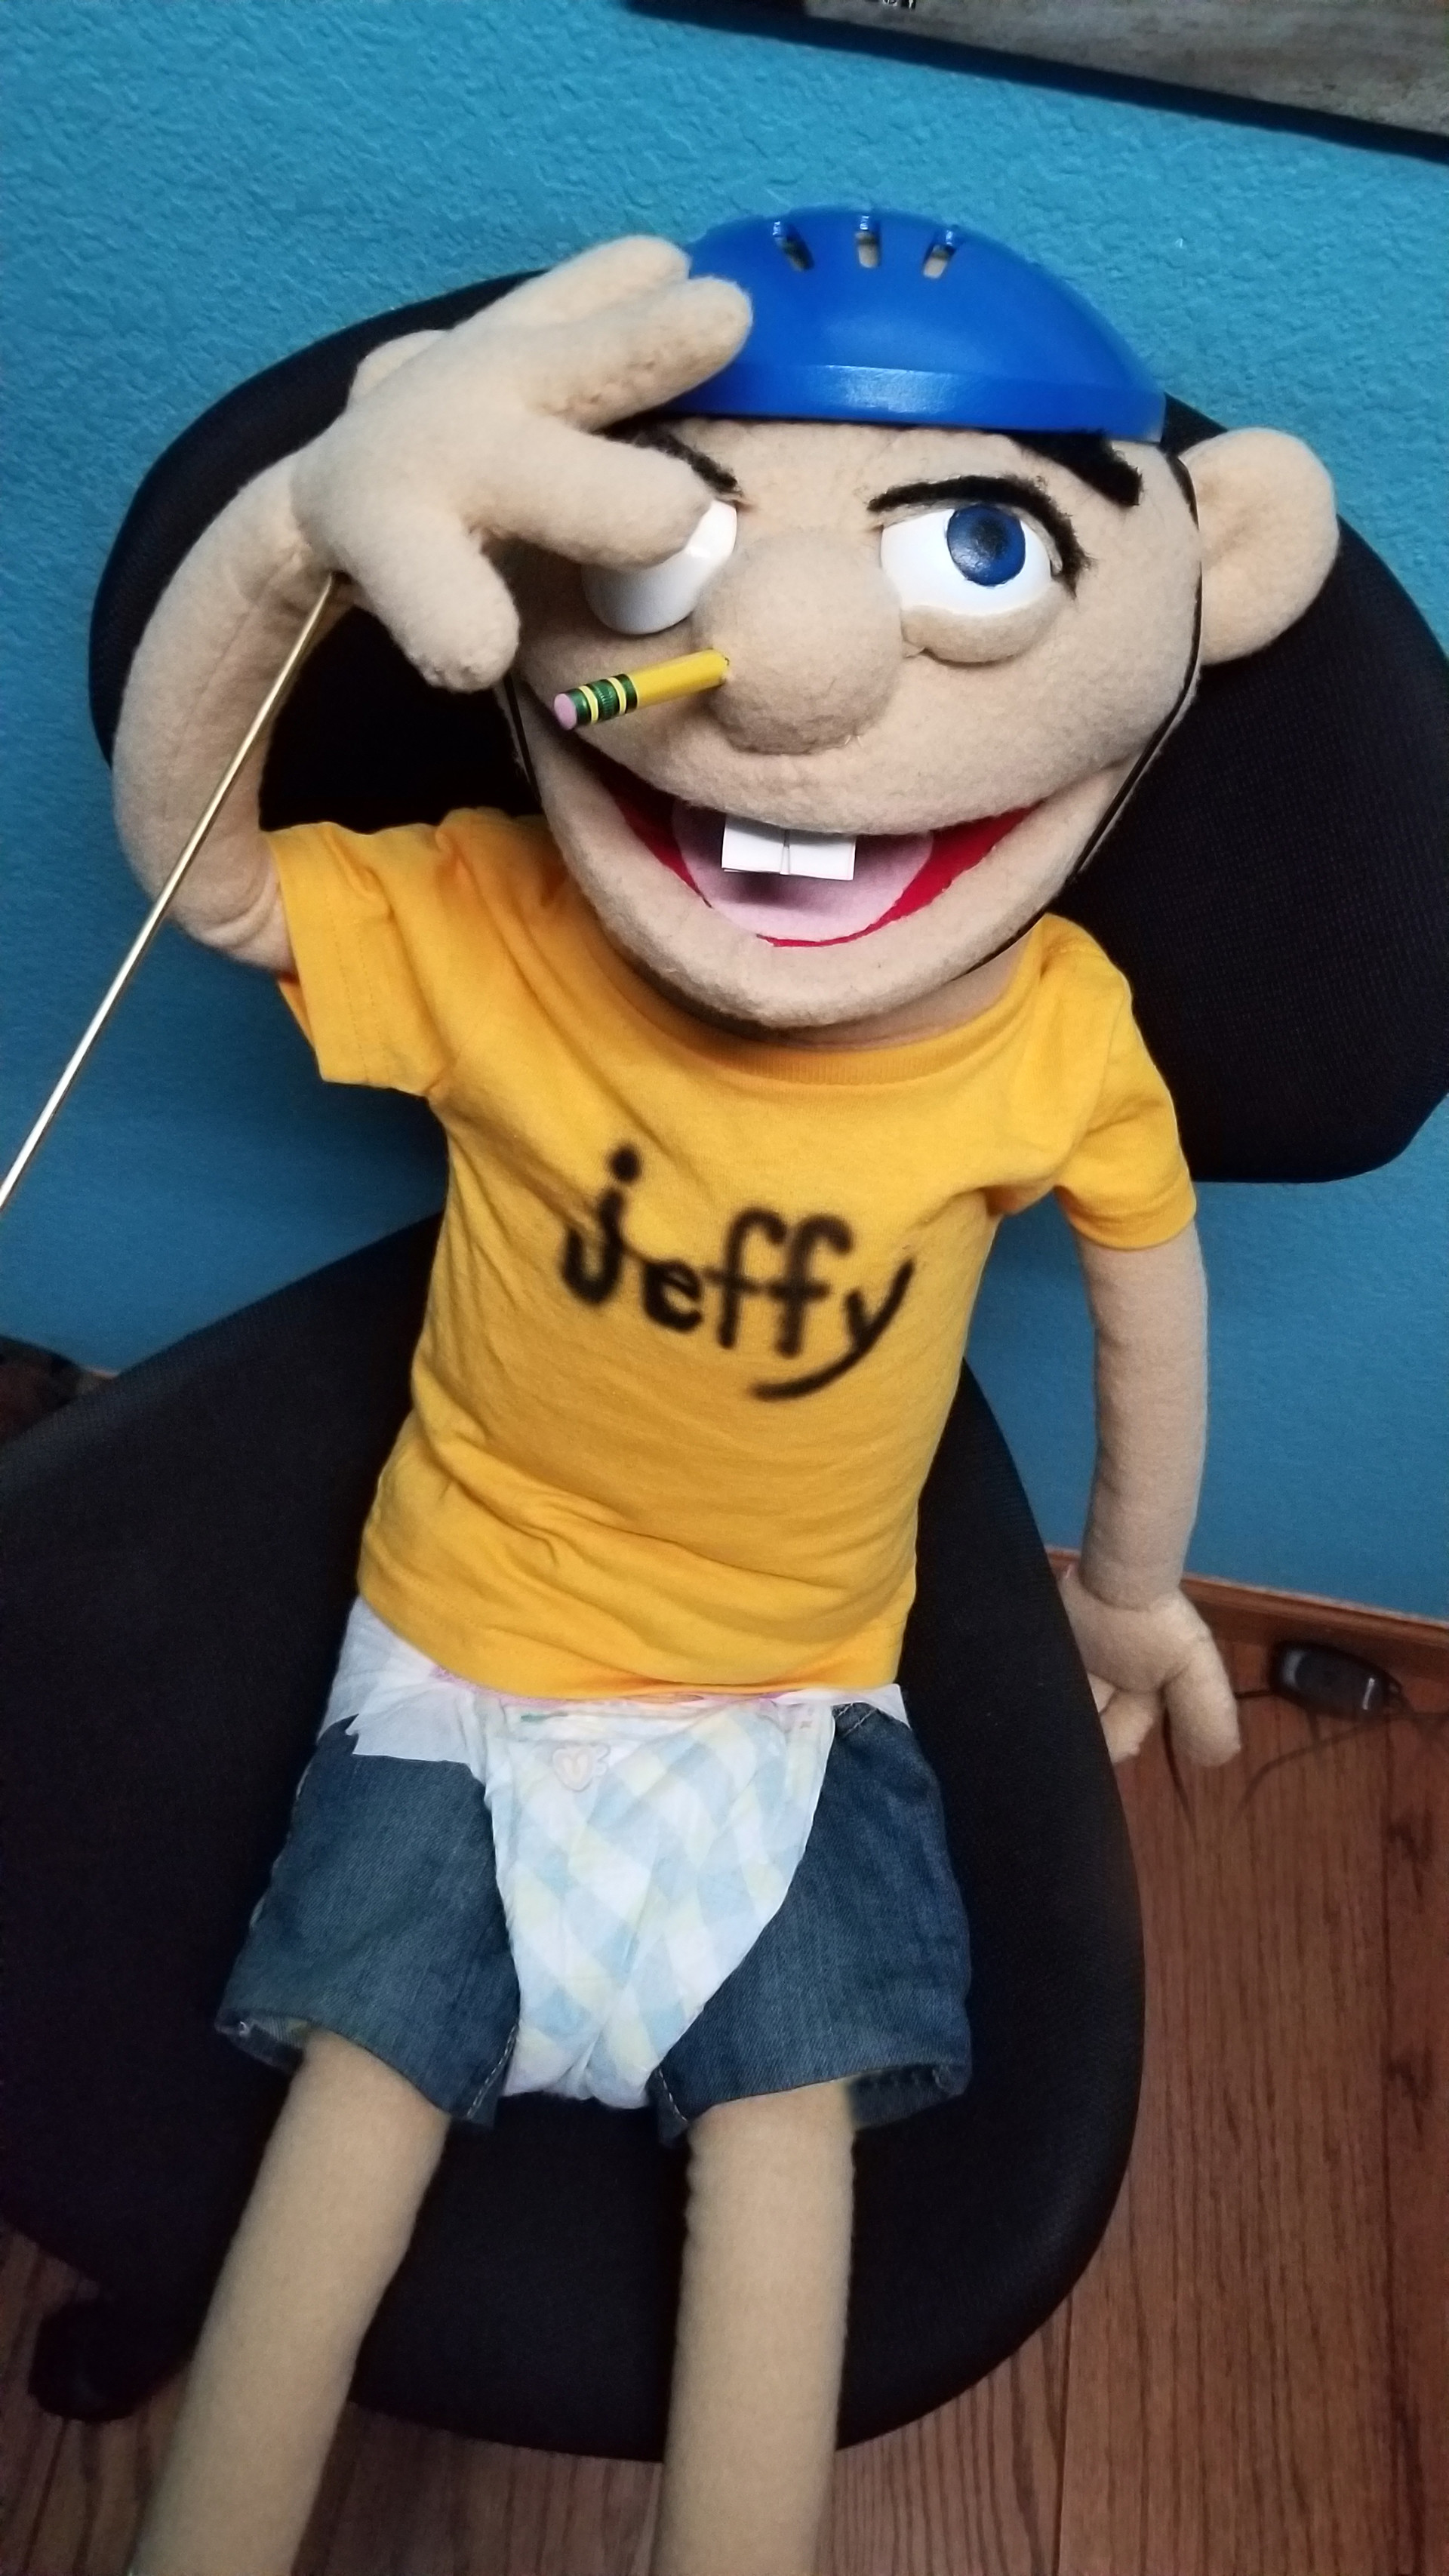 cheap jeffy doll